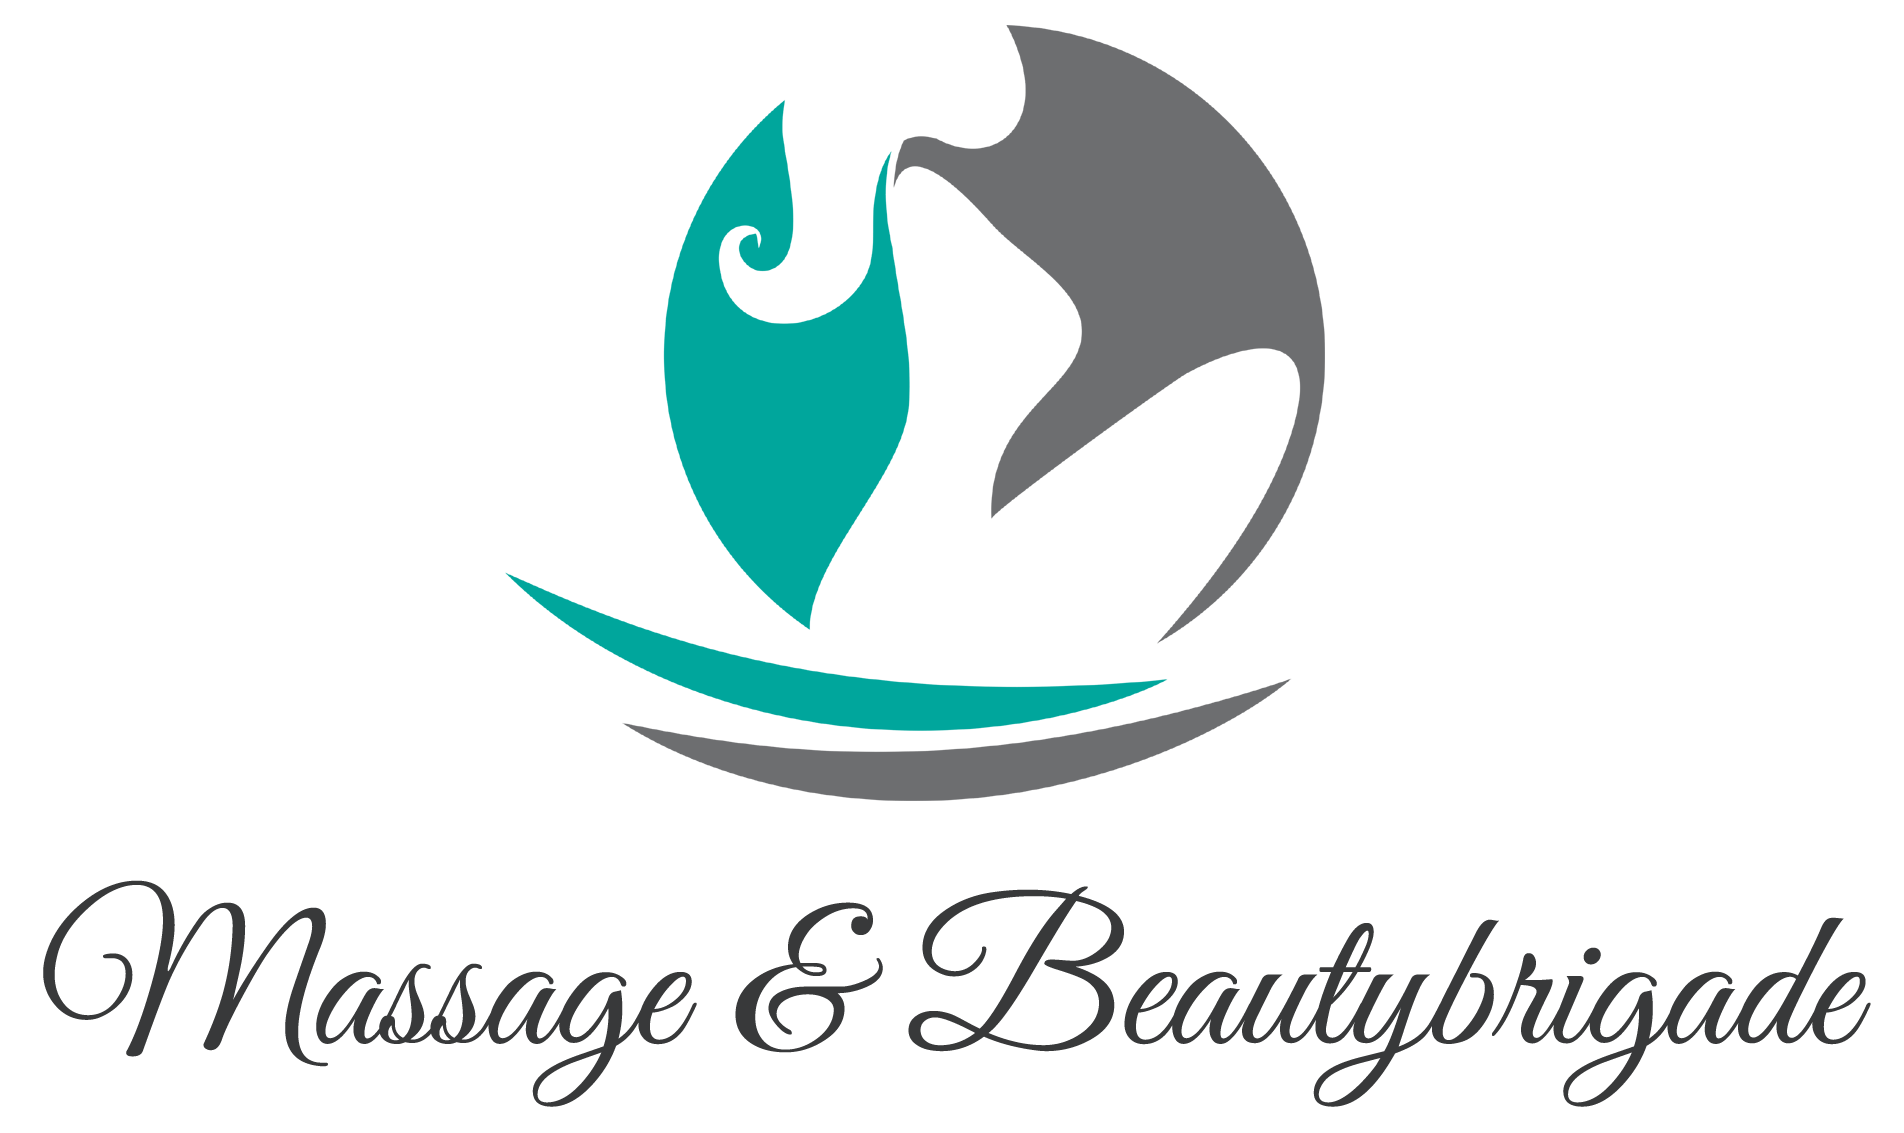 Massage & Beautybrigade